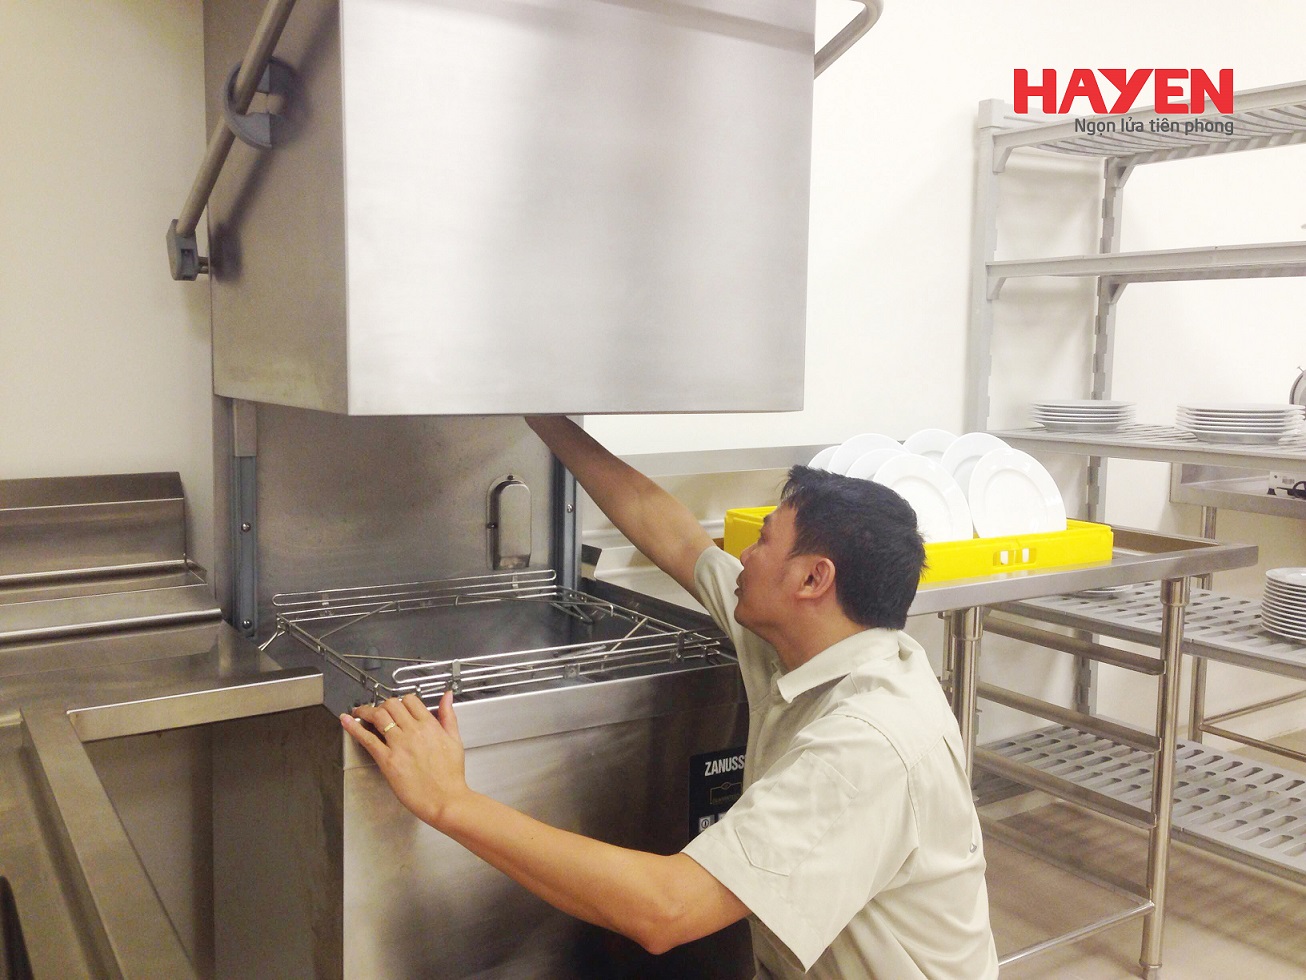 Hà Yến chuyên sửa chữa tủ lạnh, tủ đông công nghiệp không điều chỉnh được nhiệt độ kịp thời,hiệu quả.